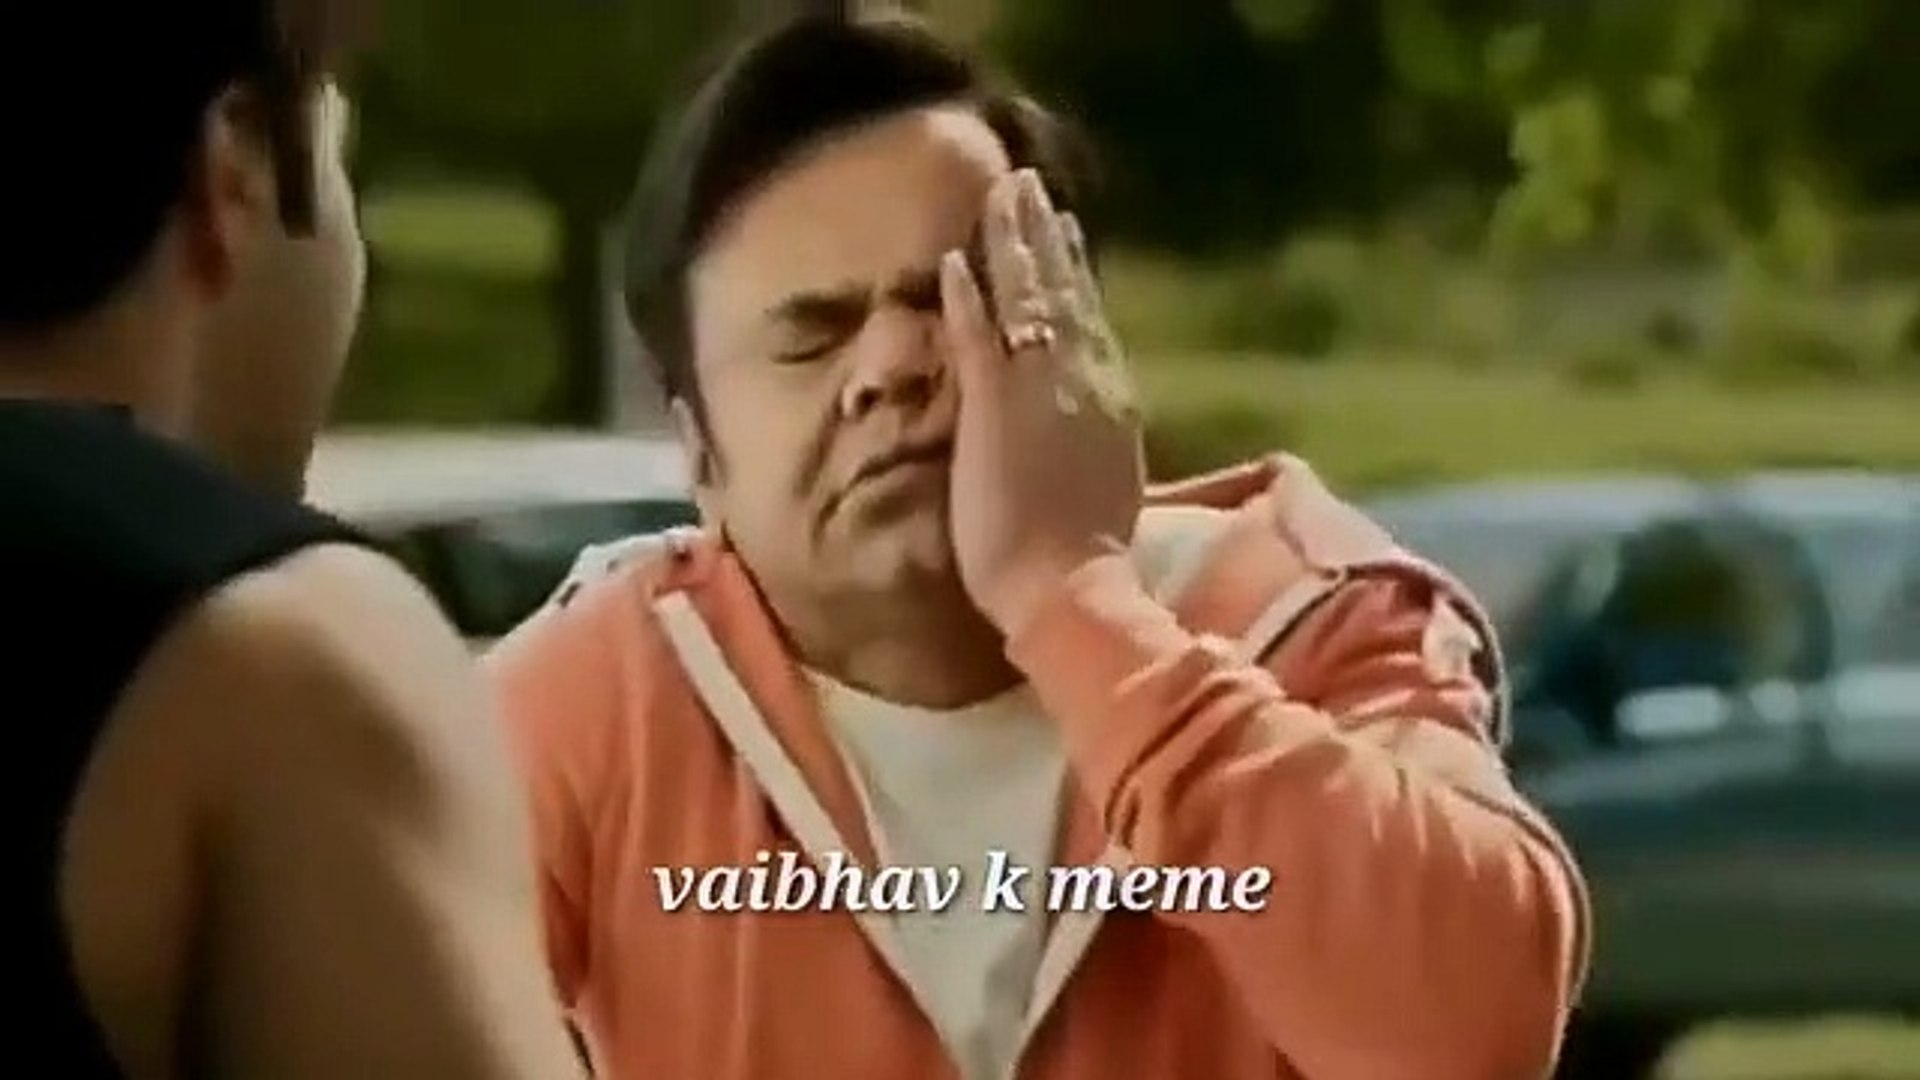 INDIAN MEMES ⚫ Phir Hera Pheri memes ⚫ bb ki Vines meme ⚫ Ek din mit meme ⚫  vaibhav k meme ⚫ memes (360p) - video Dailymotion